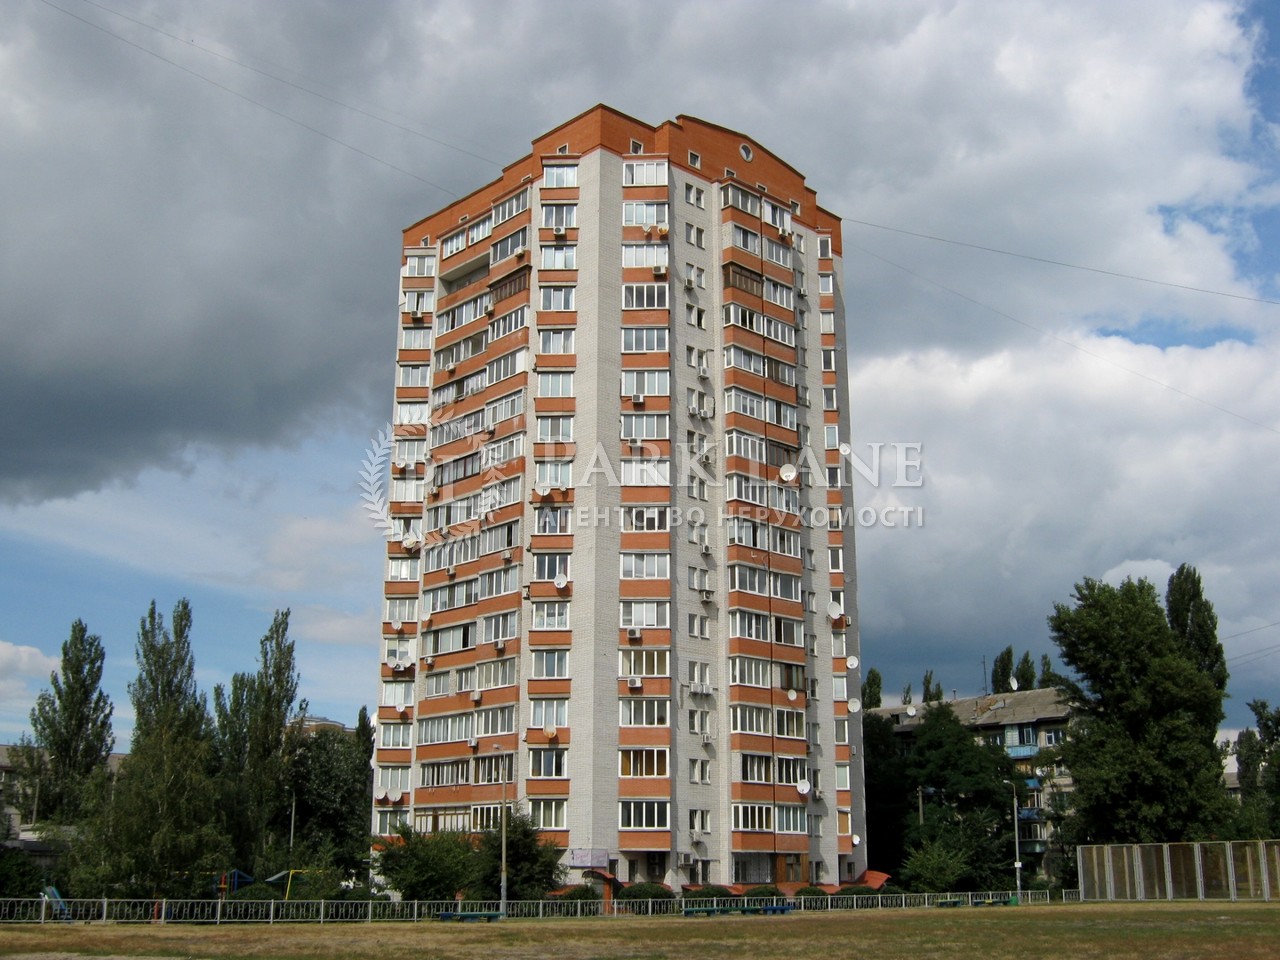  Нежилое помещение, ул. Красноткацкая, Киев, Z-629771 - Фото 1